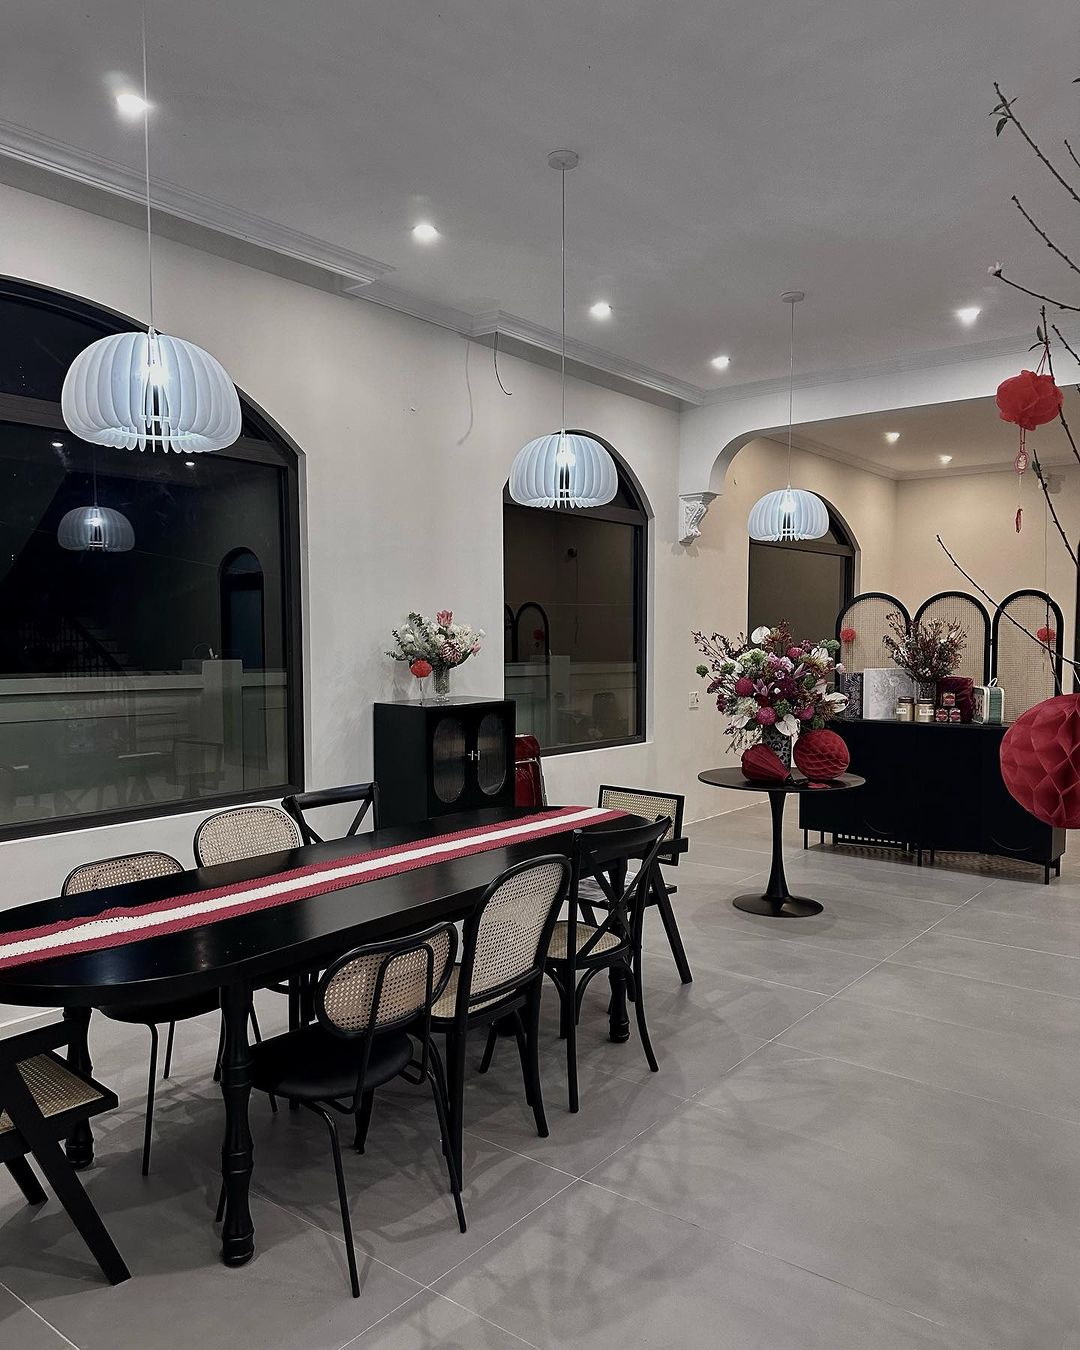 Quỳnh Lương ''unbox'' biệt thự mới đúng Mùng 1 Tết, khoe nhà rộng đến nỗi sắm nội thất không xuể